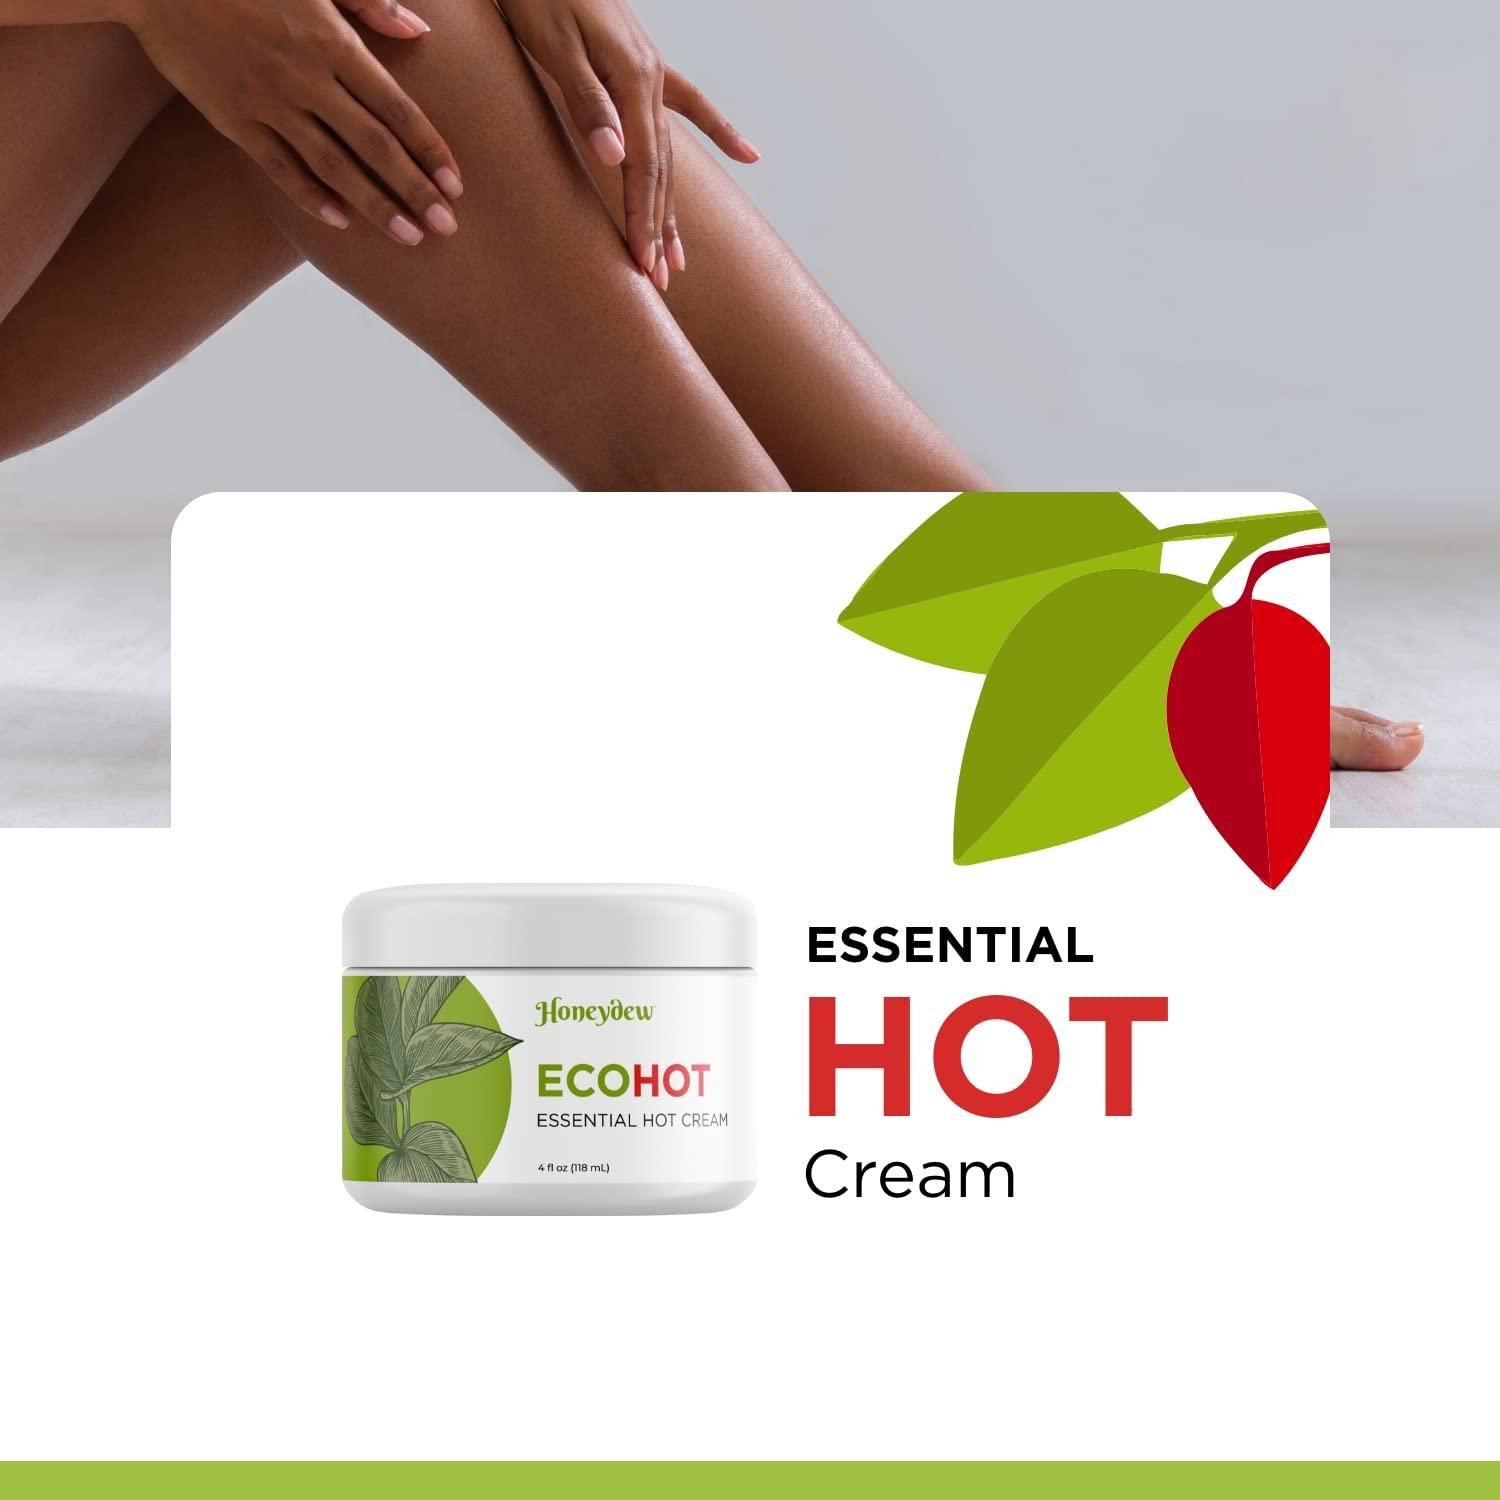 Deeply Moisturizing Butt Enhancement Cream - Skin Firming Cream